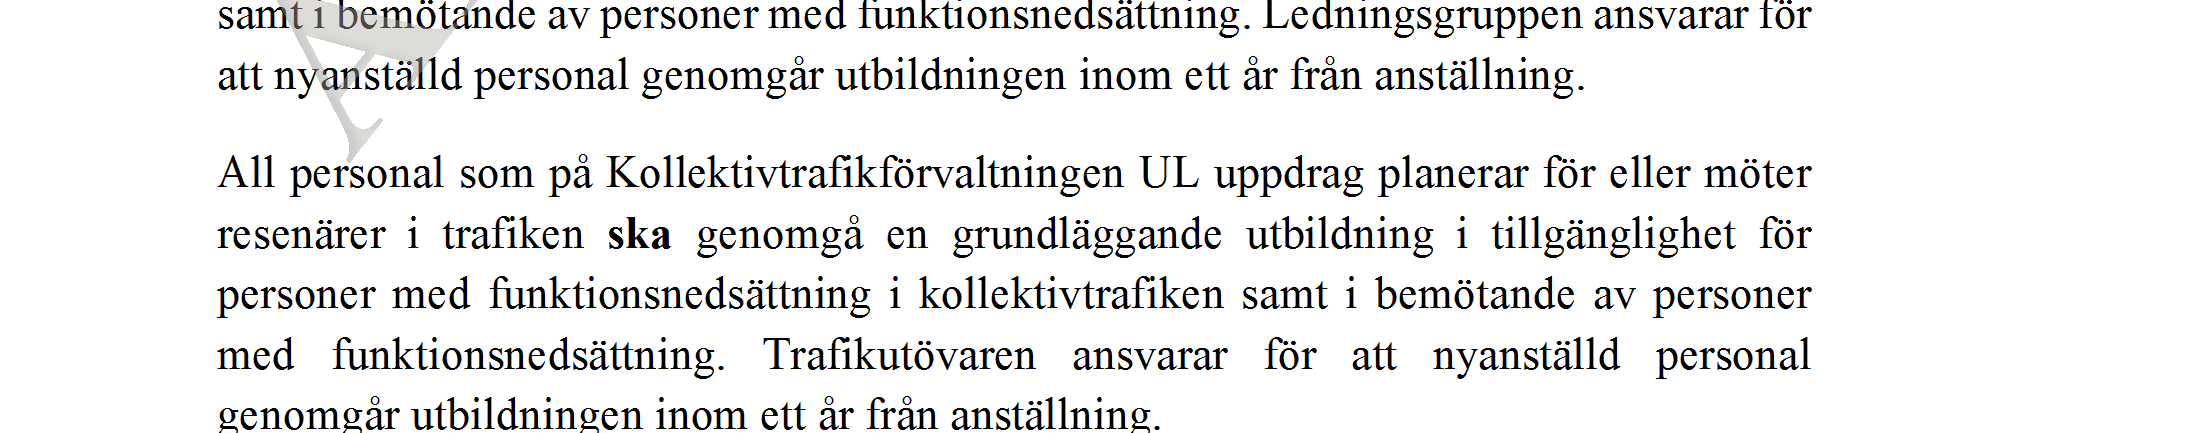 Riktlinjer för tillgänglighet i kollektivtrafiken i Uppsala län för personer med funktionsnedsättning Bilaga 118 3 Riktlinjer för tillgänglighet i kollektivtrafiken 3.